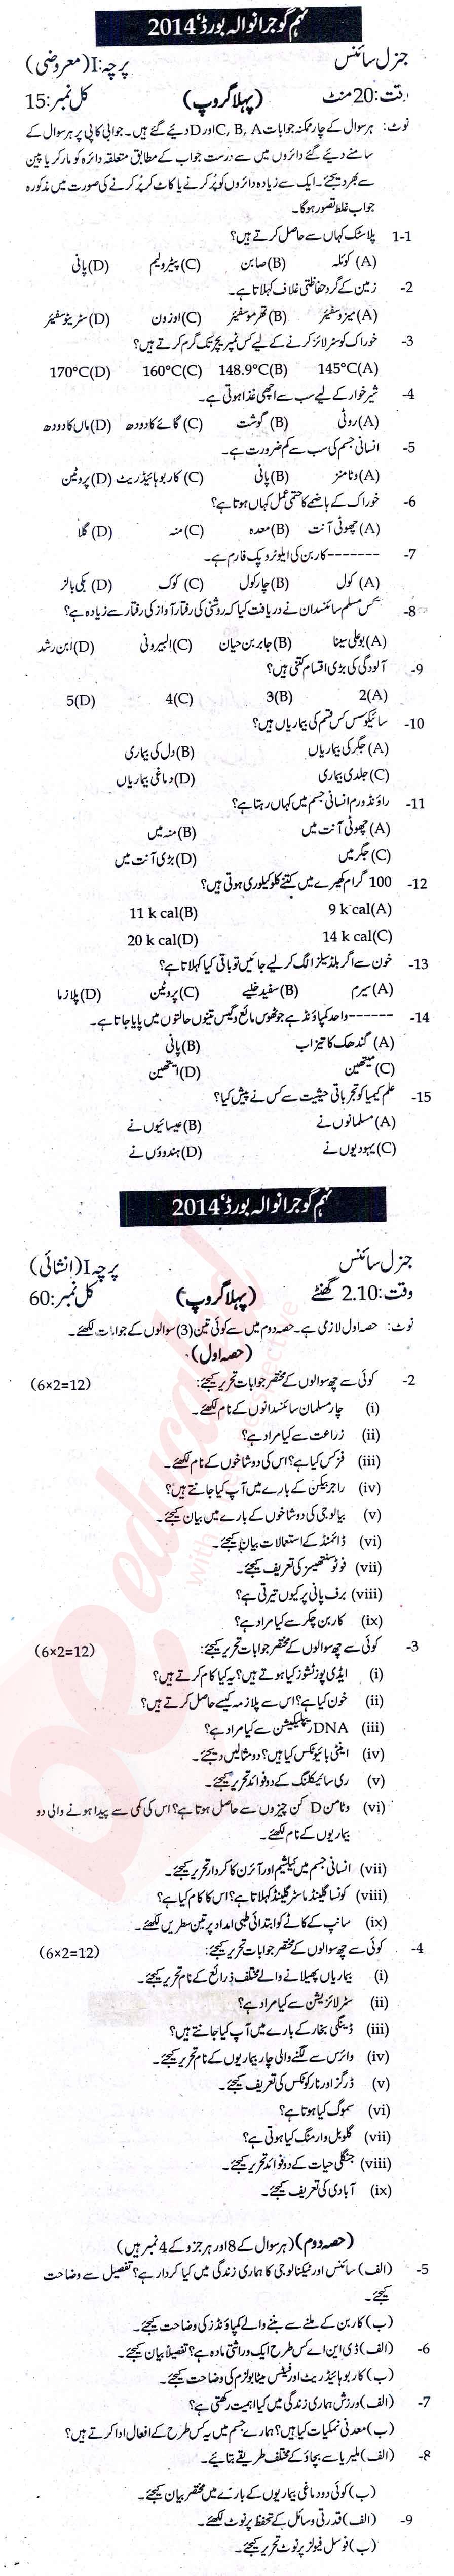 Science 9th Urdu Medium Past Paper Group 1 BISE Gujranwala 2014